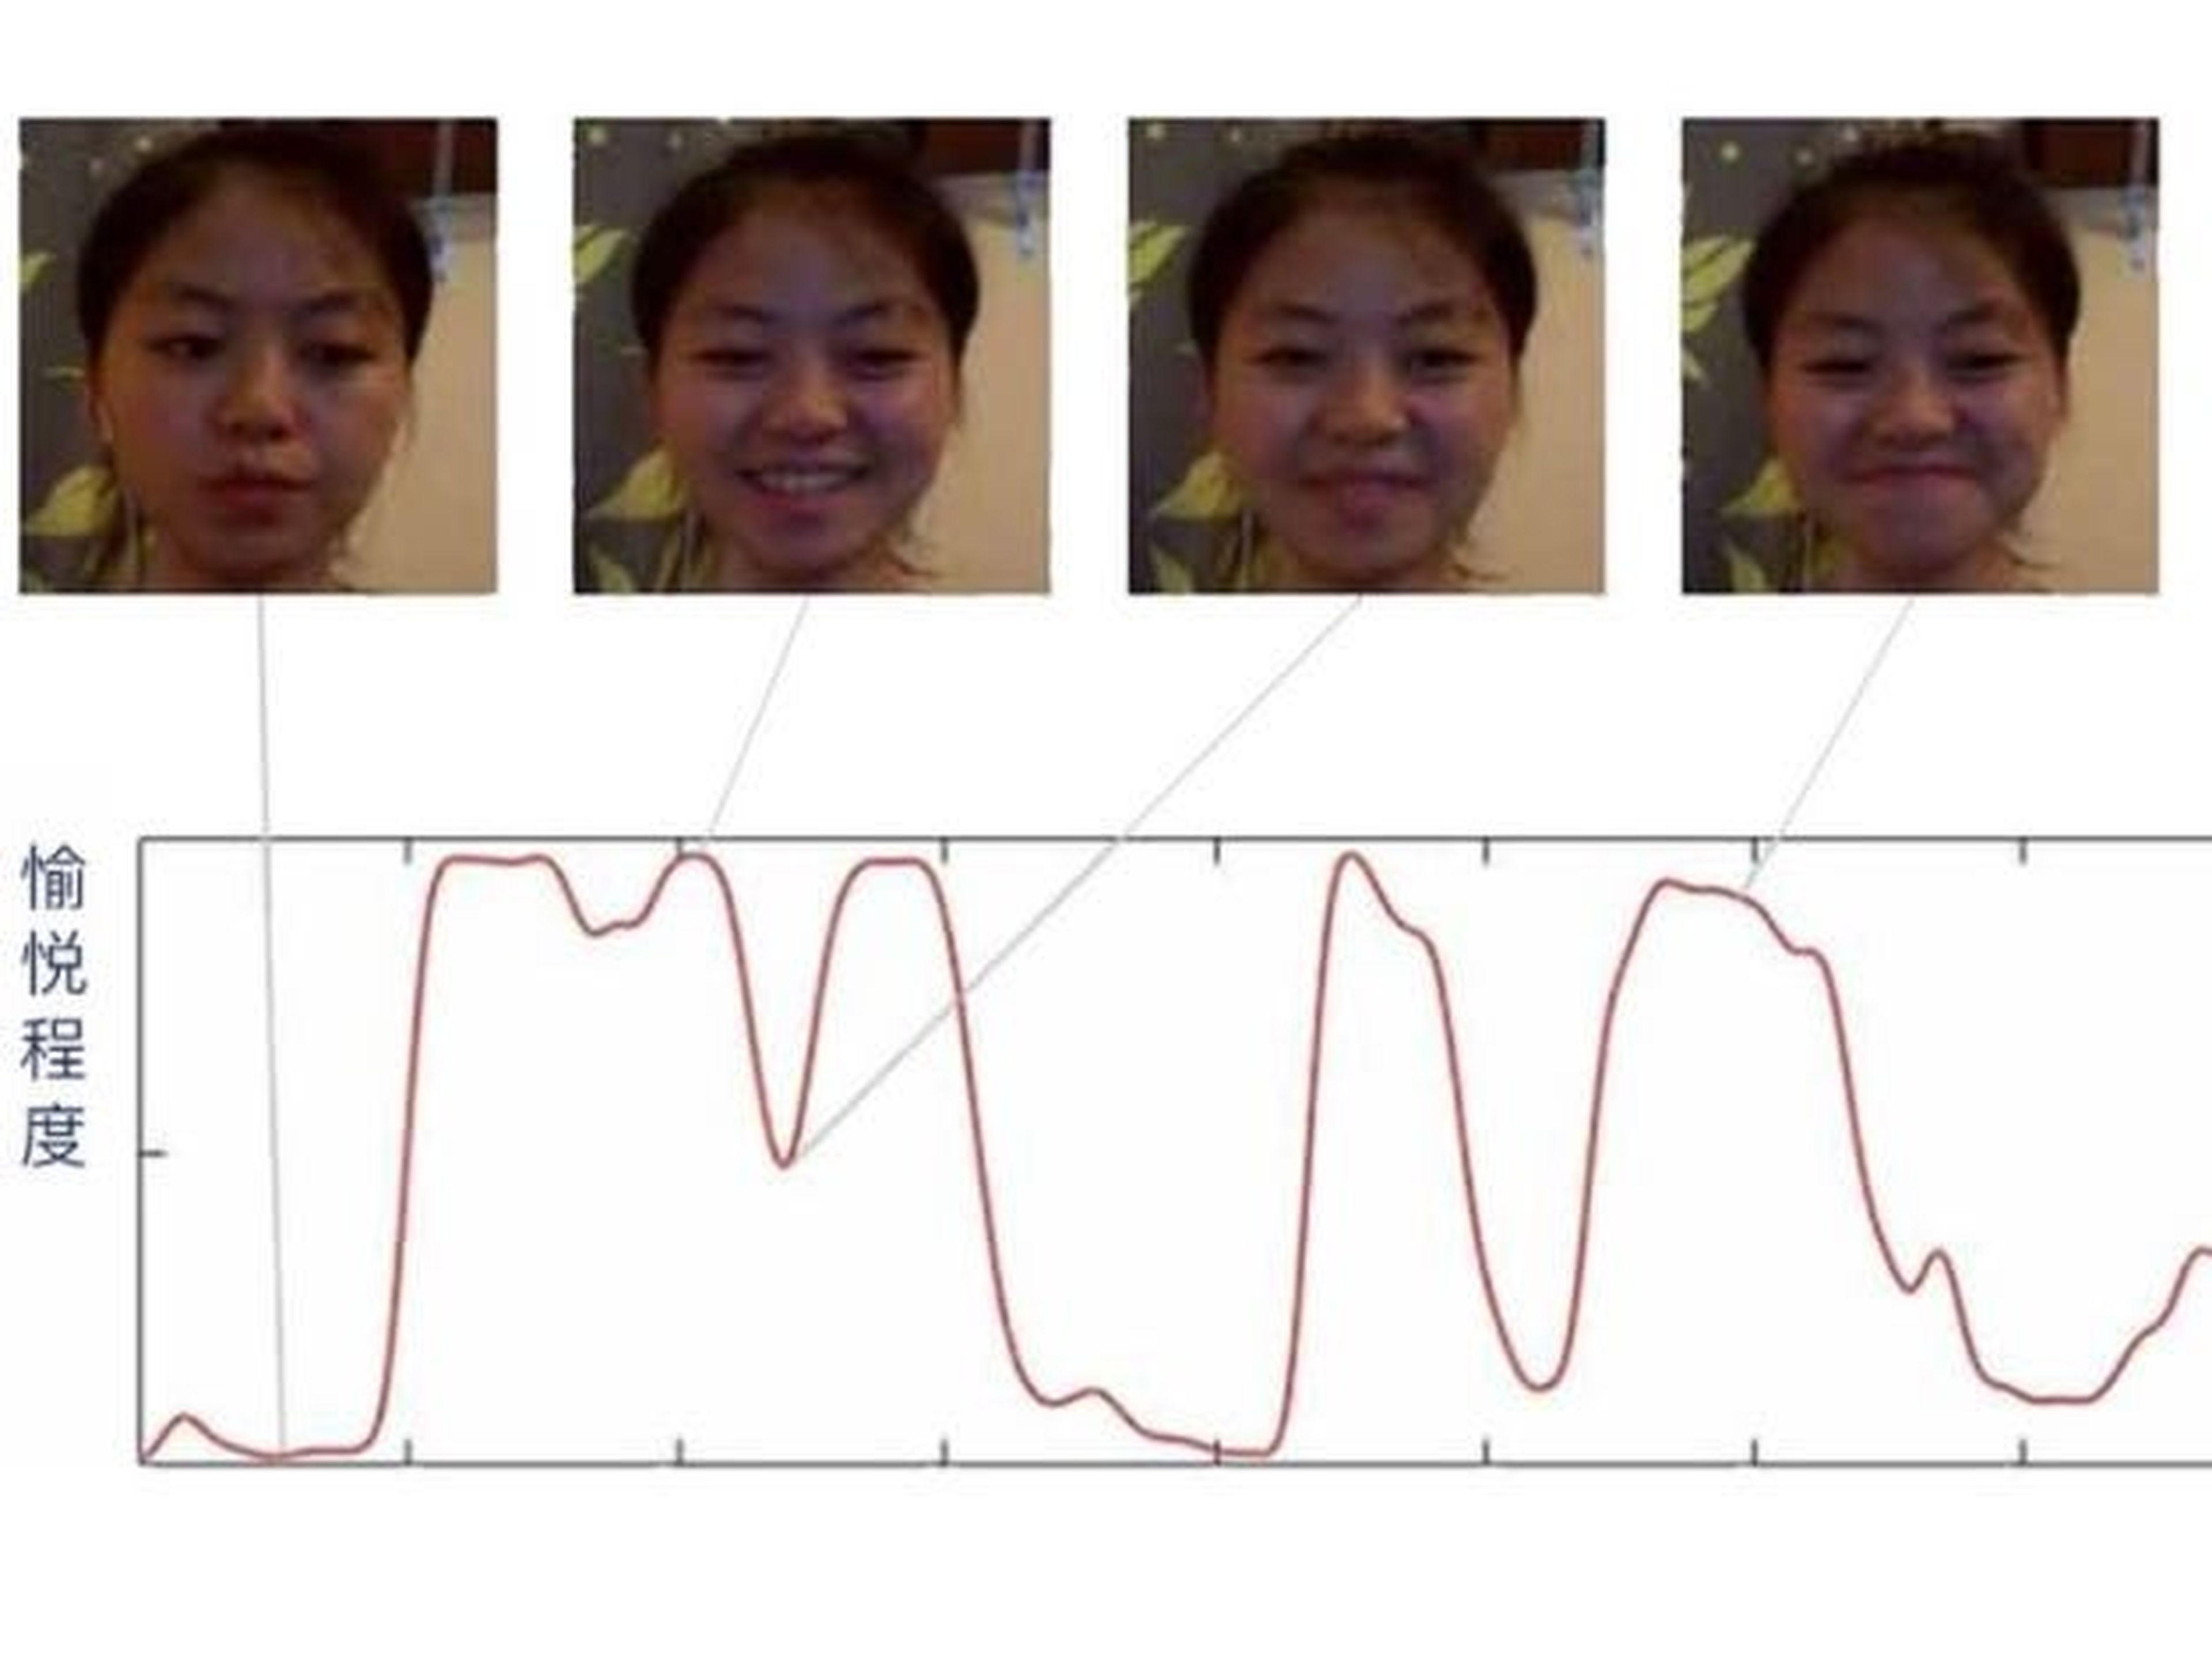 Aquí, una maqueta muestra cómo el sistema de reconocimiento de emociones de Taigusys puede trazar el nivel de felicidad en la cara de una persona.